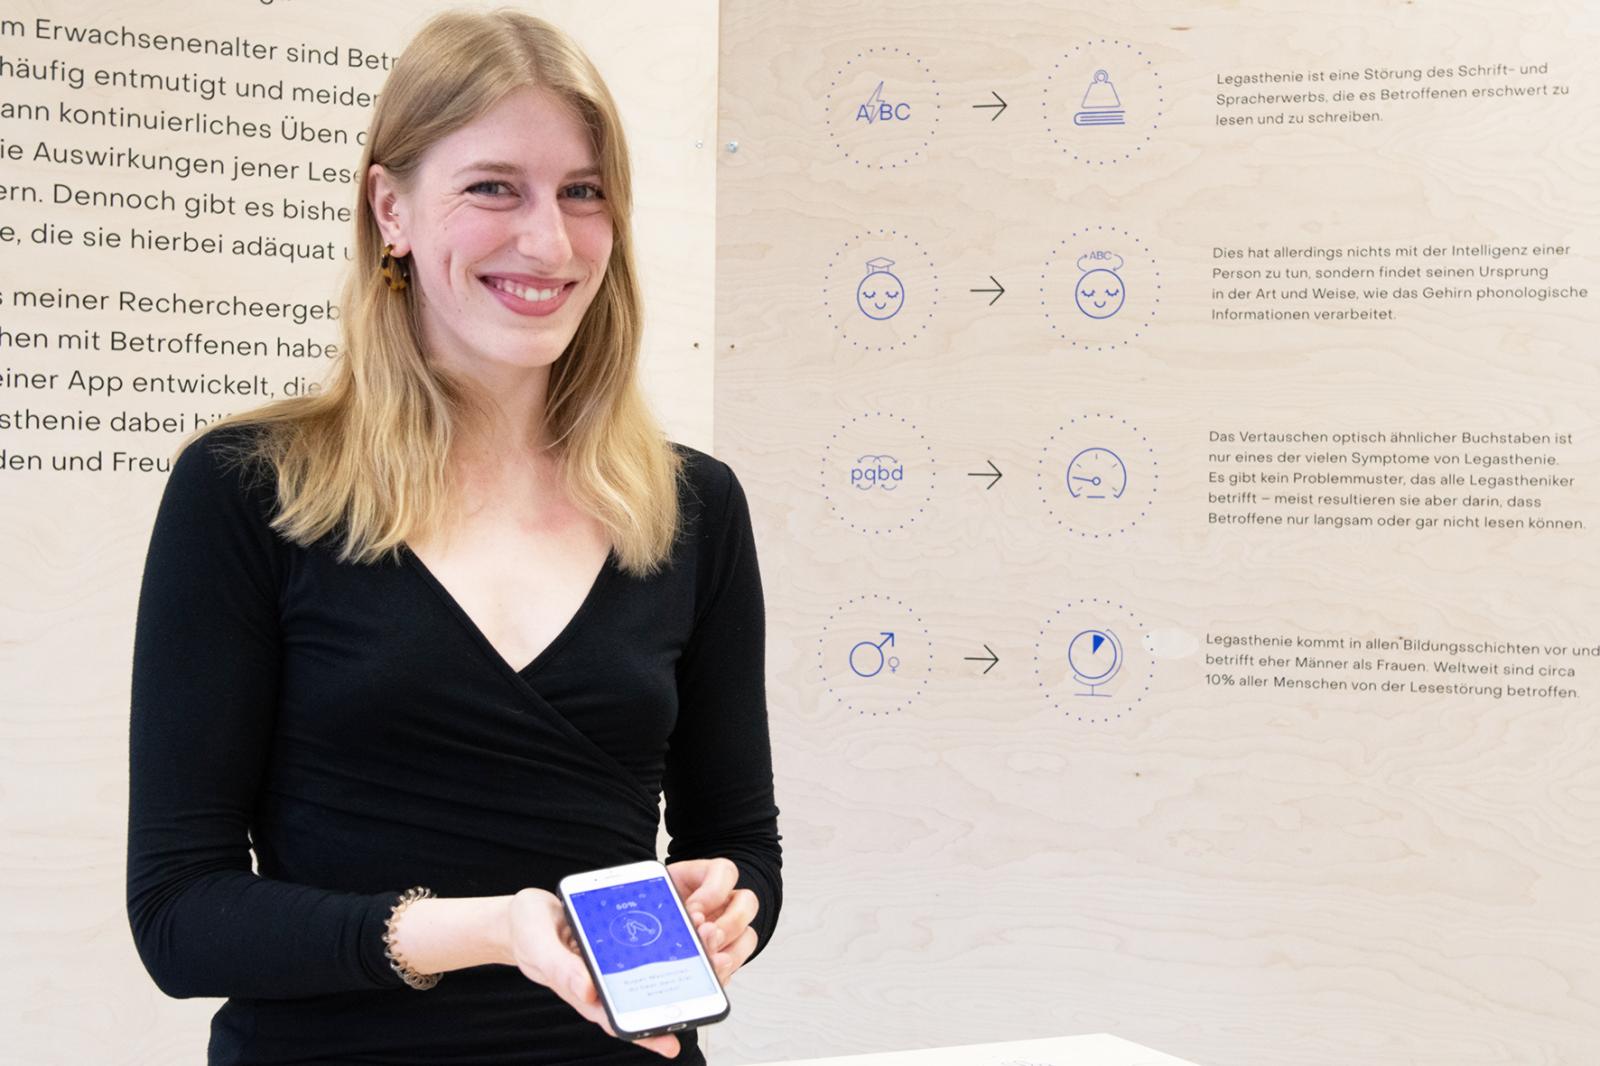 Auf der Abschlussausstellung „Parcours“ hatte Leonie Schäffer ihr App-Konzept präsentiert. Für ihre Masterarbeit erhielt die Designabsolventin den Hochschulpreis. (Foto: FH Münster/Anne Holtkötter)